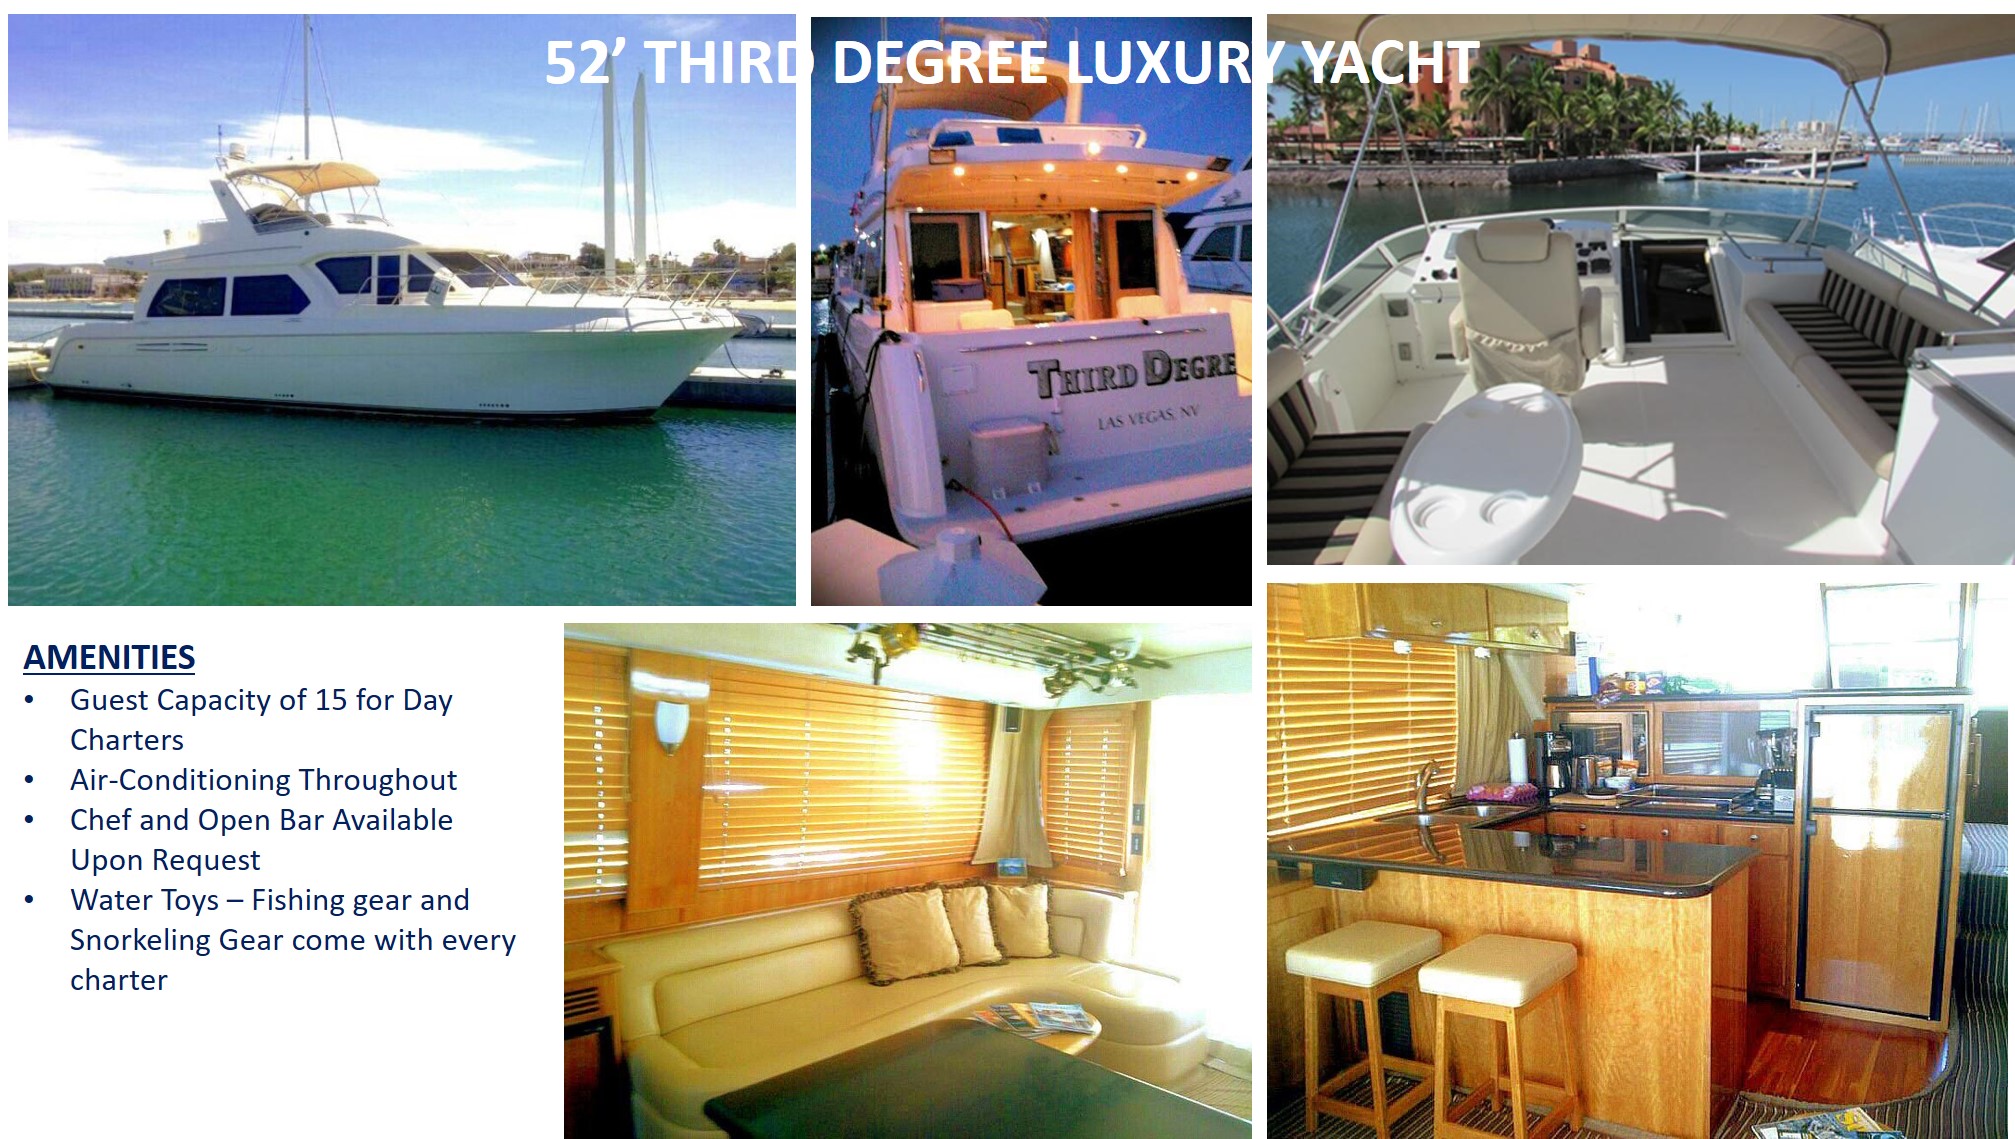 52-Third-Degree-Luxury-Yacht-2